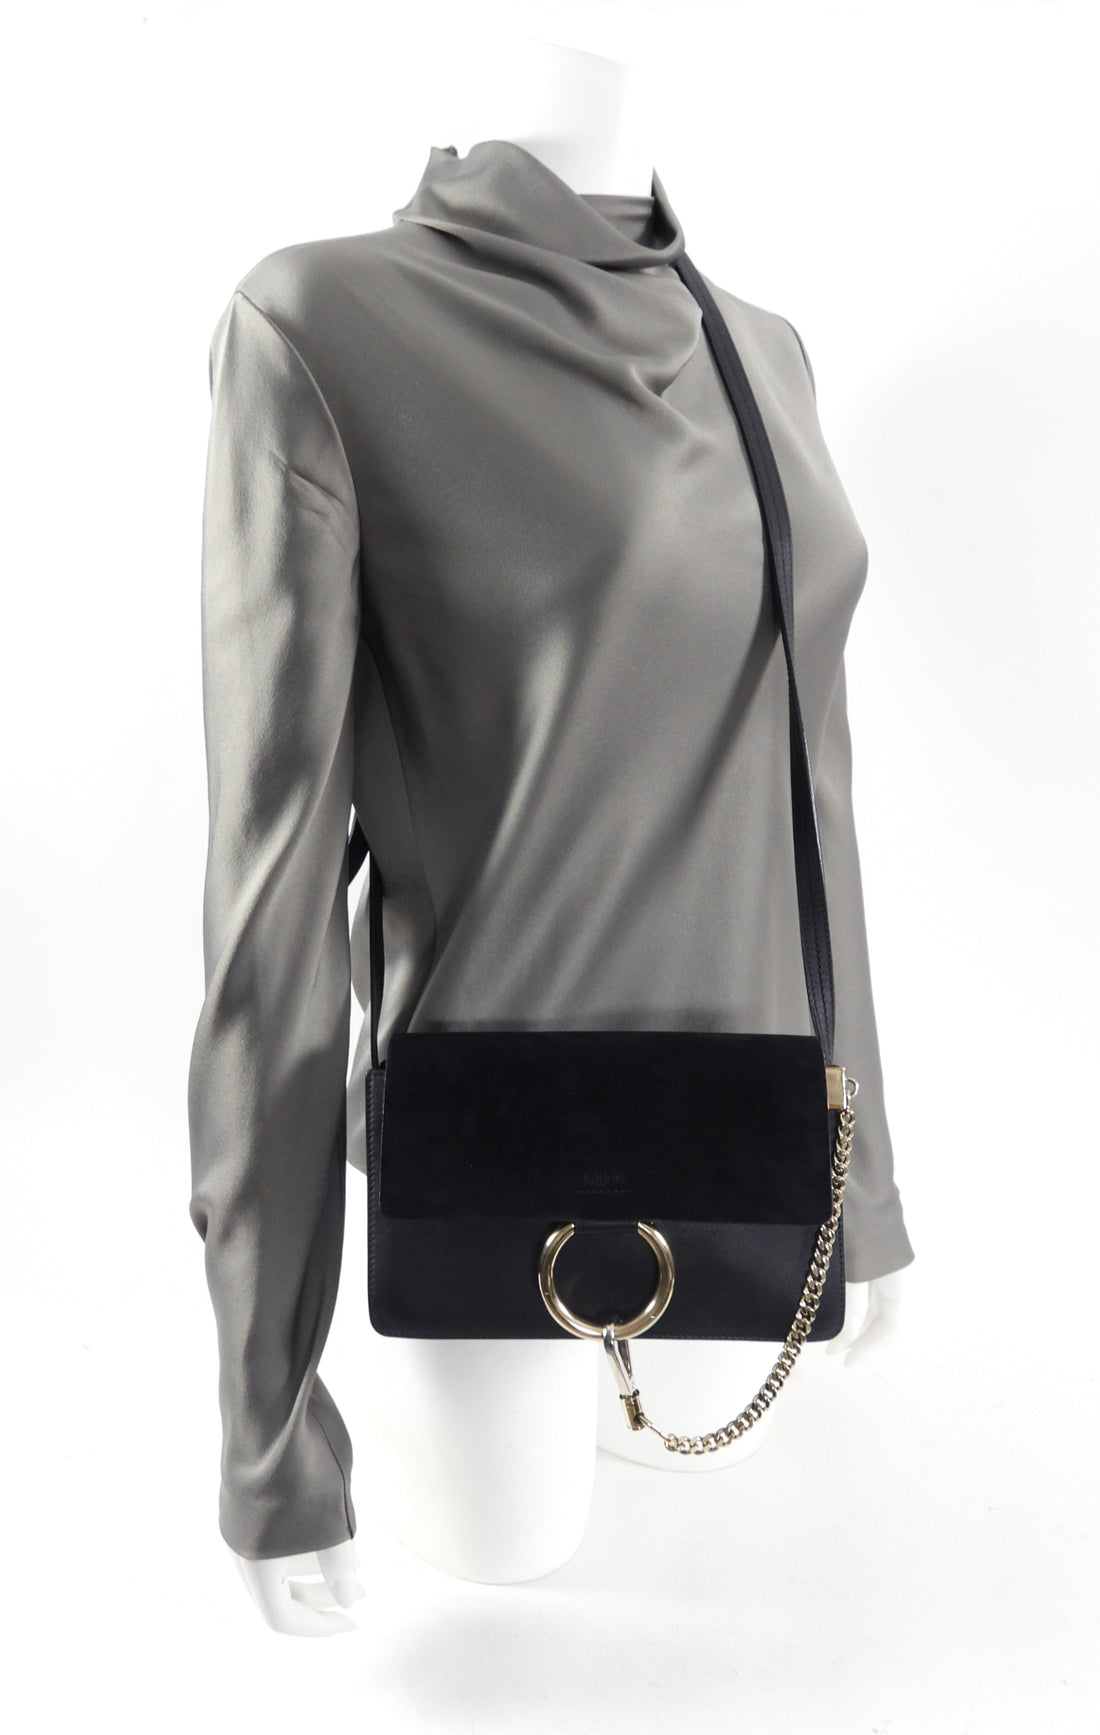 Chloé Faye Mini Chain-strap Leather Cross-body Bag - Brown - ShopStyle